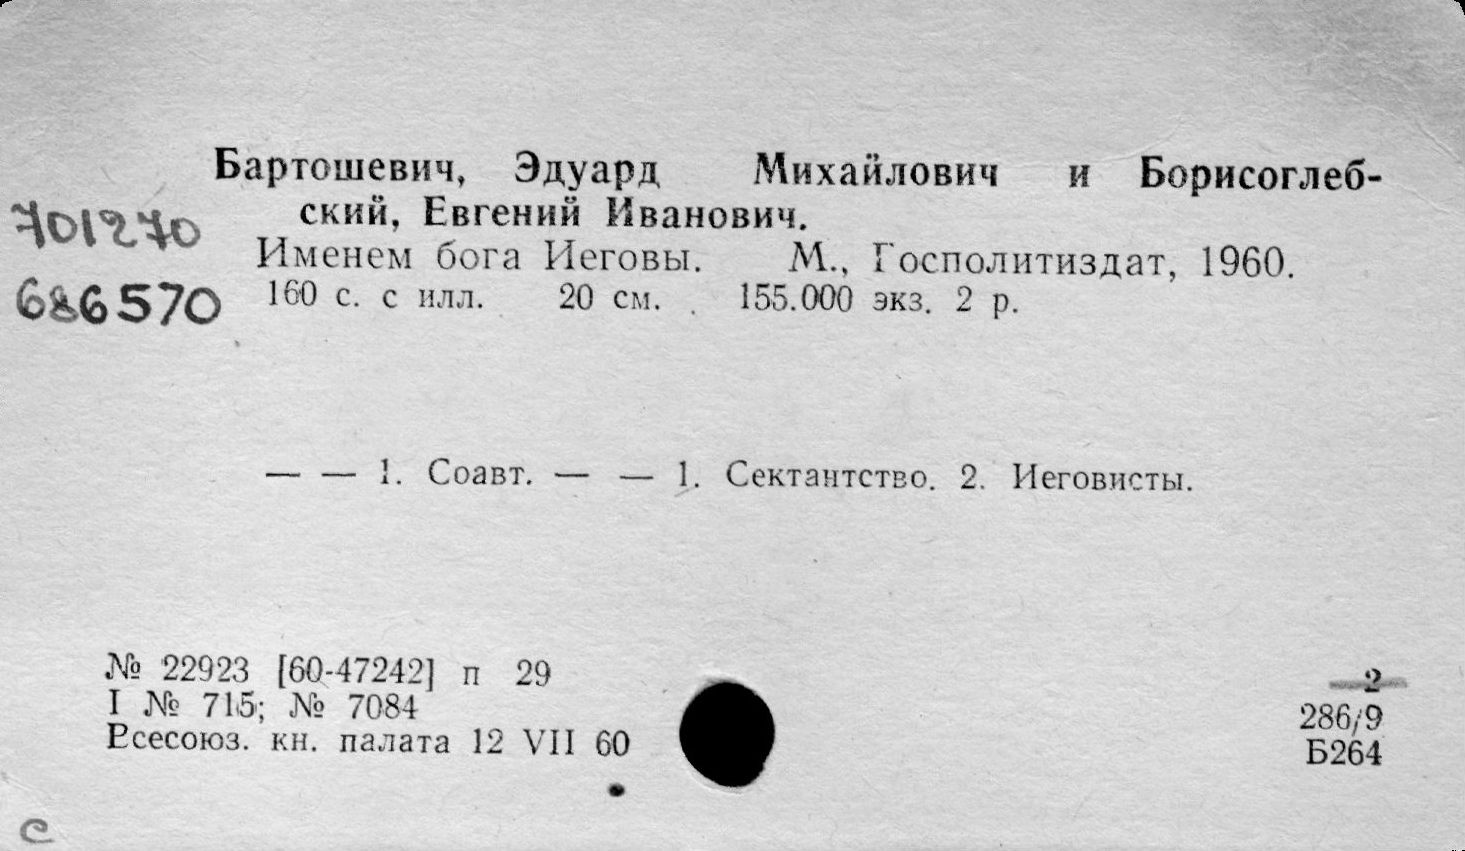 Книга Эдуарда Бартошевича и Евгения Борисоглебского. "Именем бога Иеговы". - М., 1960.